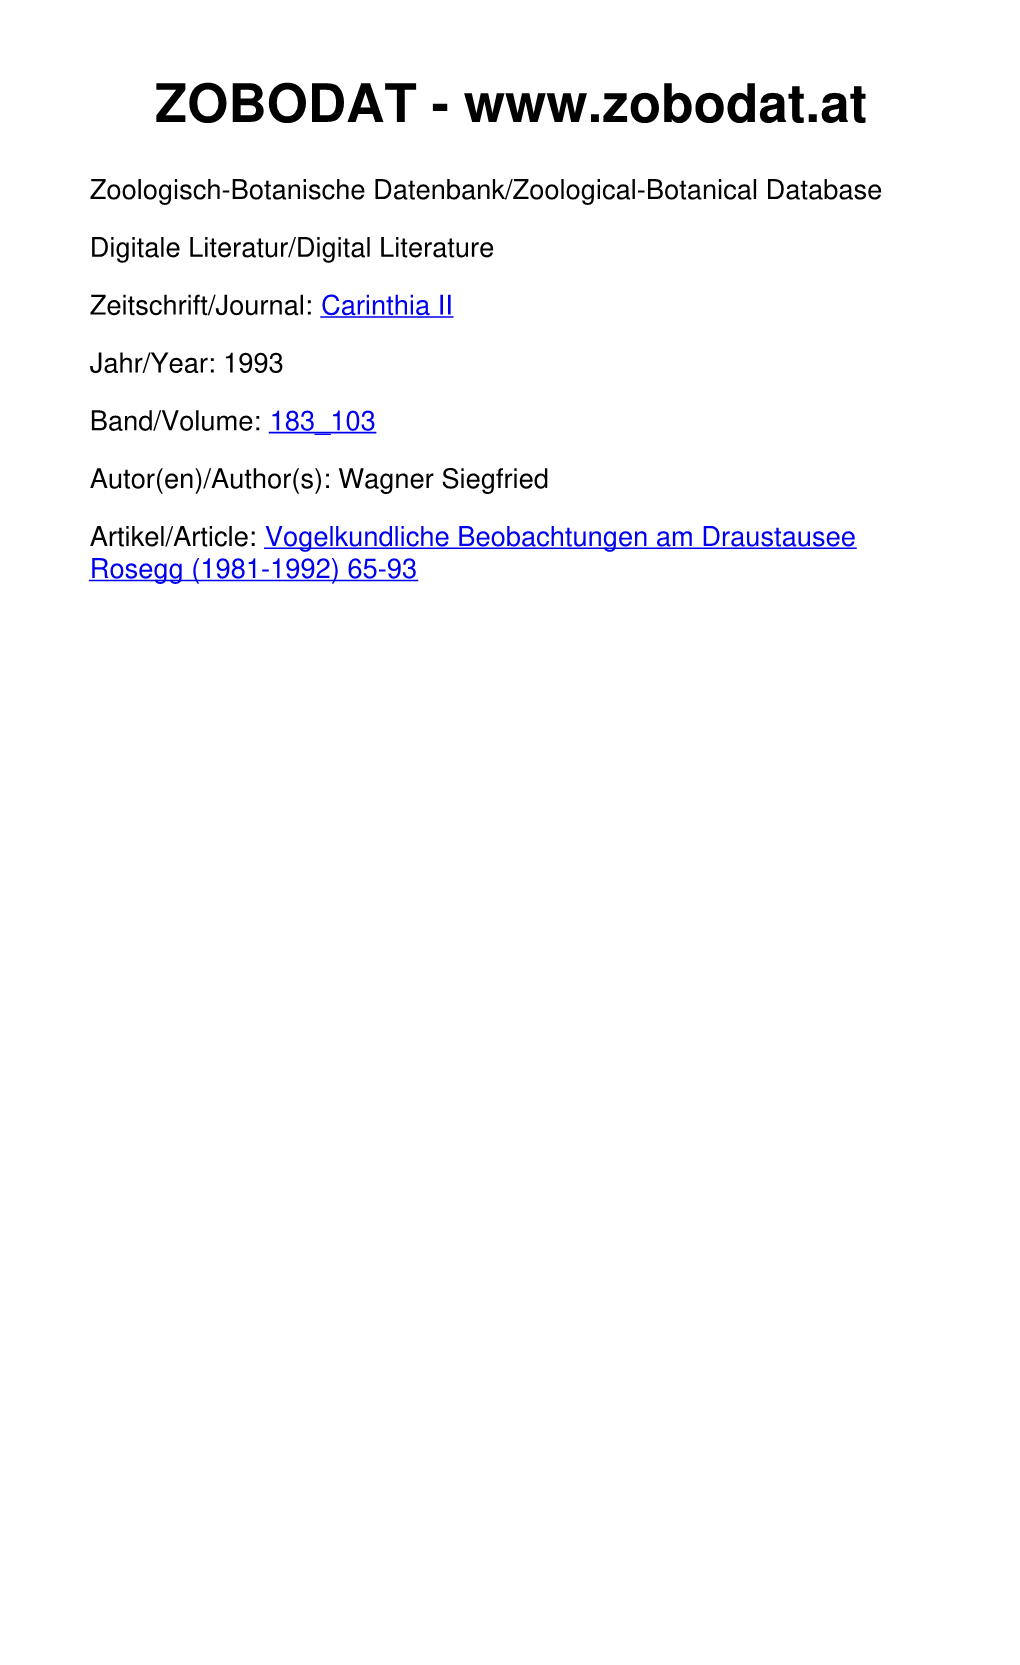 Vogelkundliche Beobachtungen Am Draustausee Rosegg (1981-1992) 65-93 ©Naturwissenschaftlicher Verein Für Kärnten, Austria, Download Unter